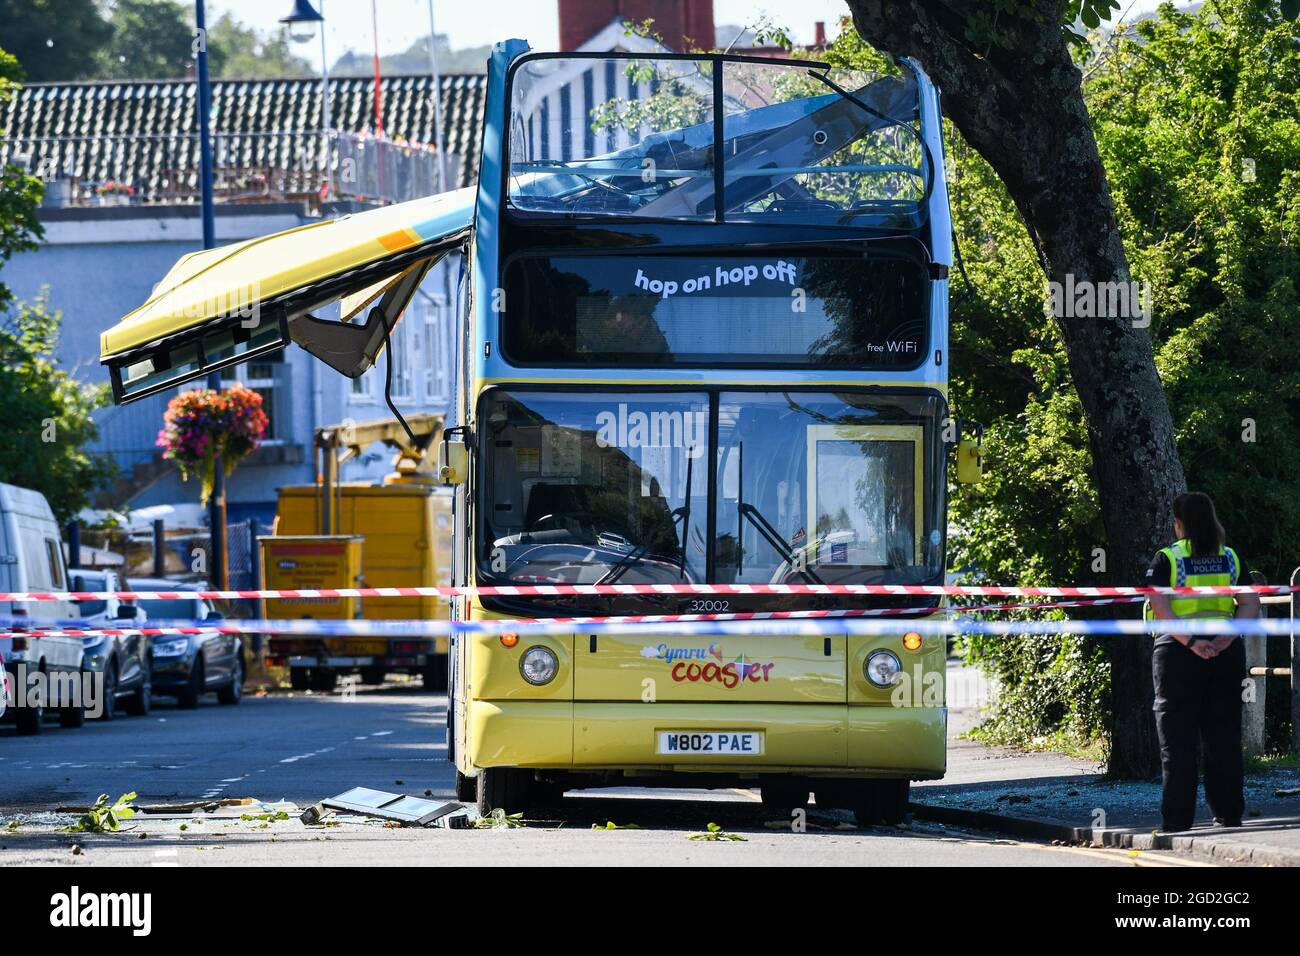 La scena del crash di autobus a Mumbles vicino a Swansea che ha visto un autobus turistico hanno il tetto strappato da un albero. È stata messa in atto una risposta di emergenza importante, ma si ritiene che non vi siano lesioni gravi. Foto Stock